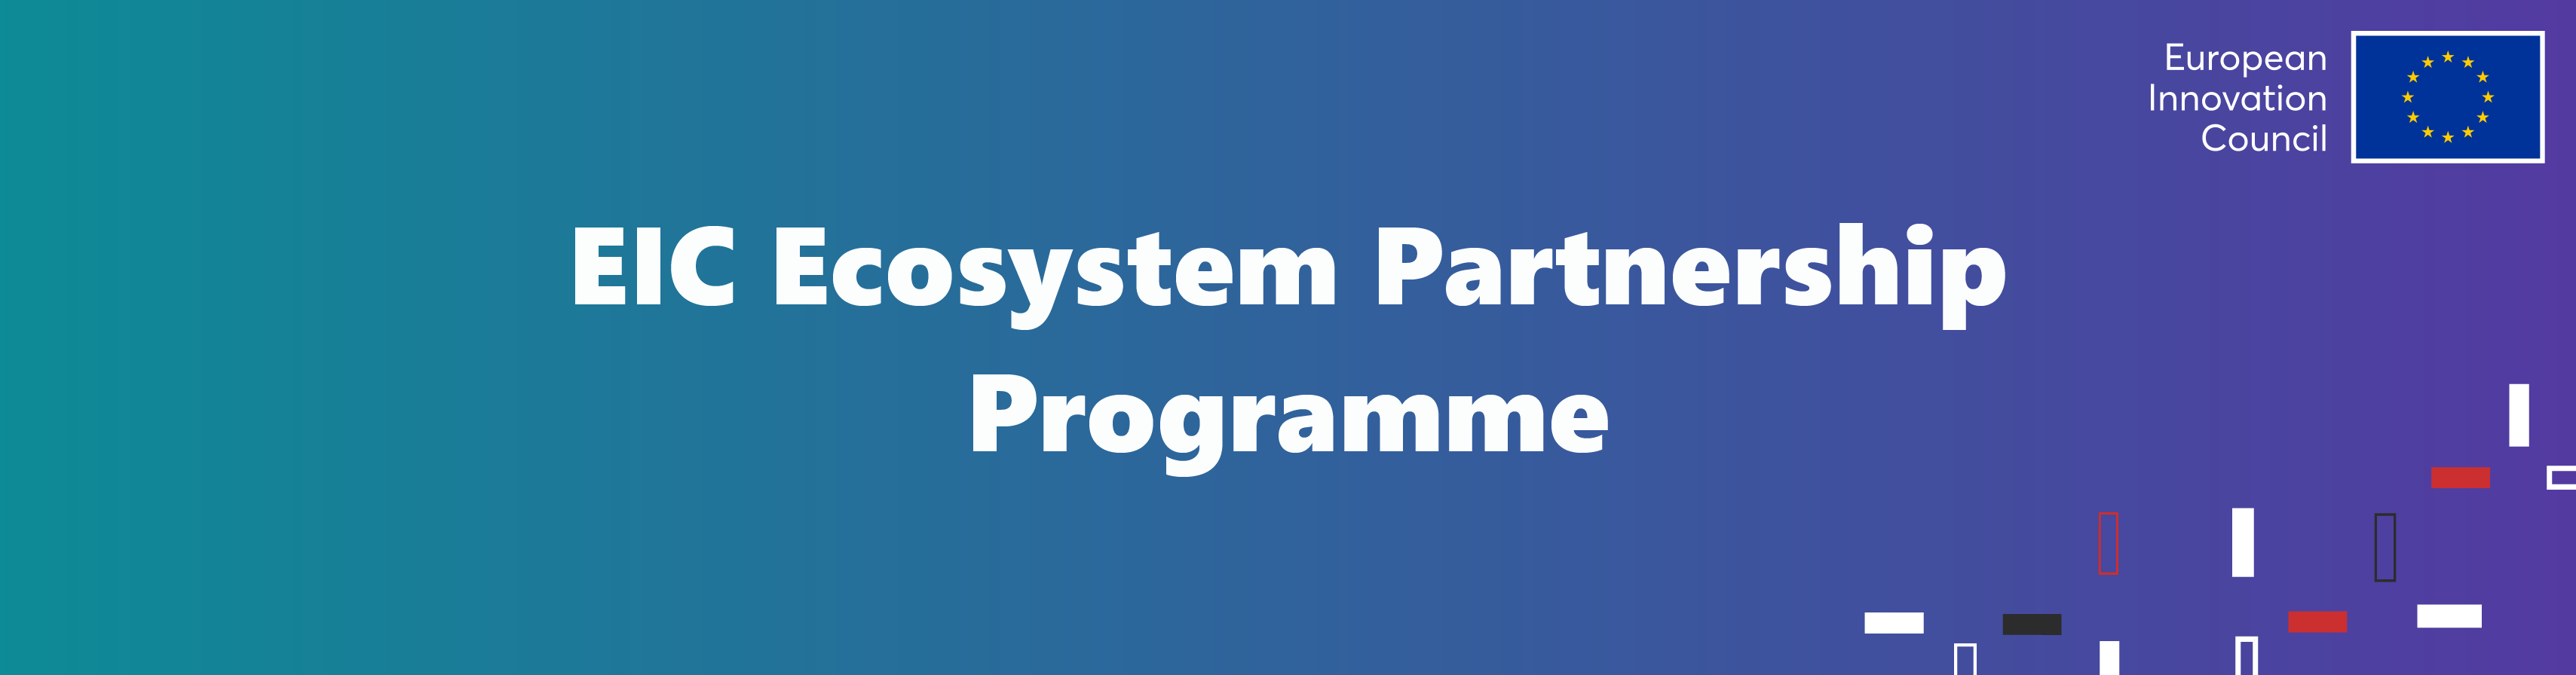 EIC Ecosystem Partnership Programme